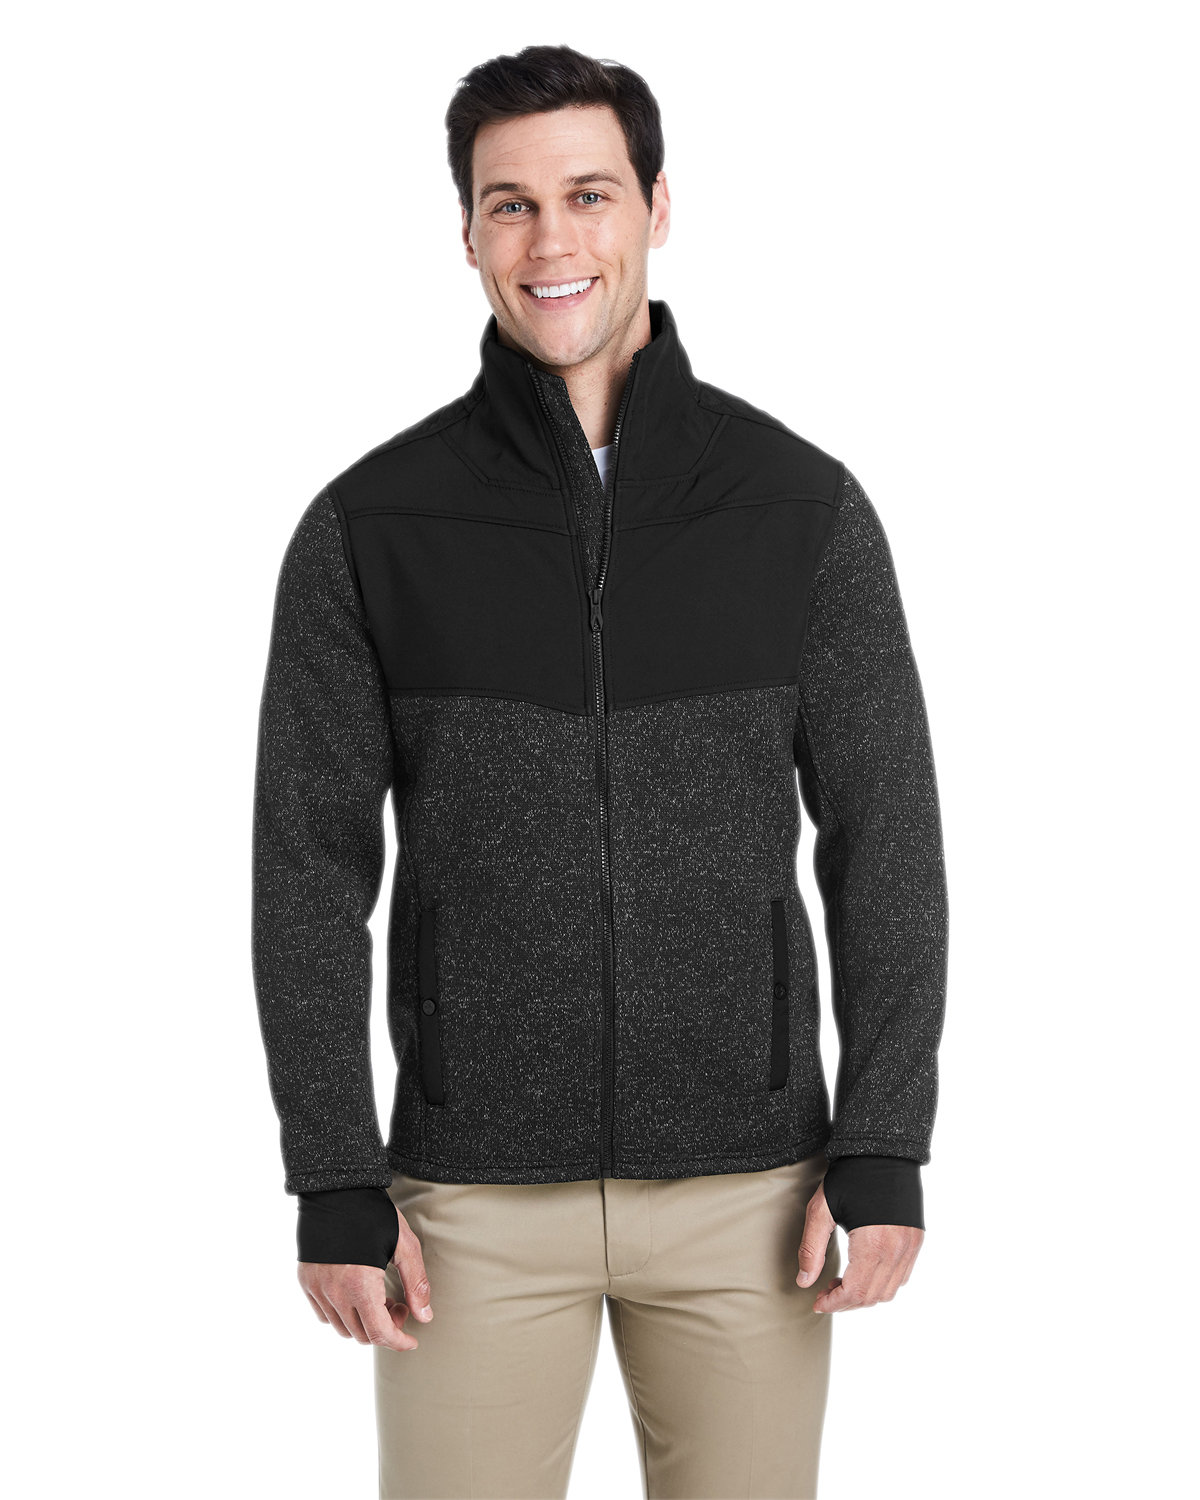 Spyder Men's Passage Sweater Jacket | alphabroder Canada